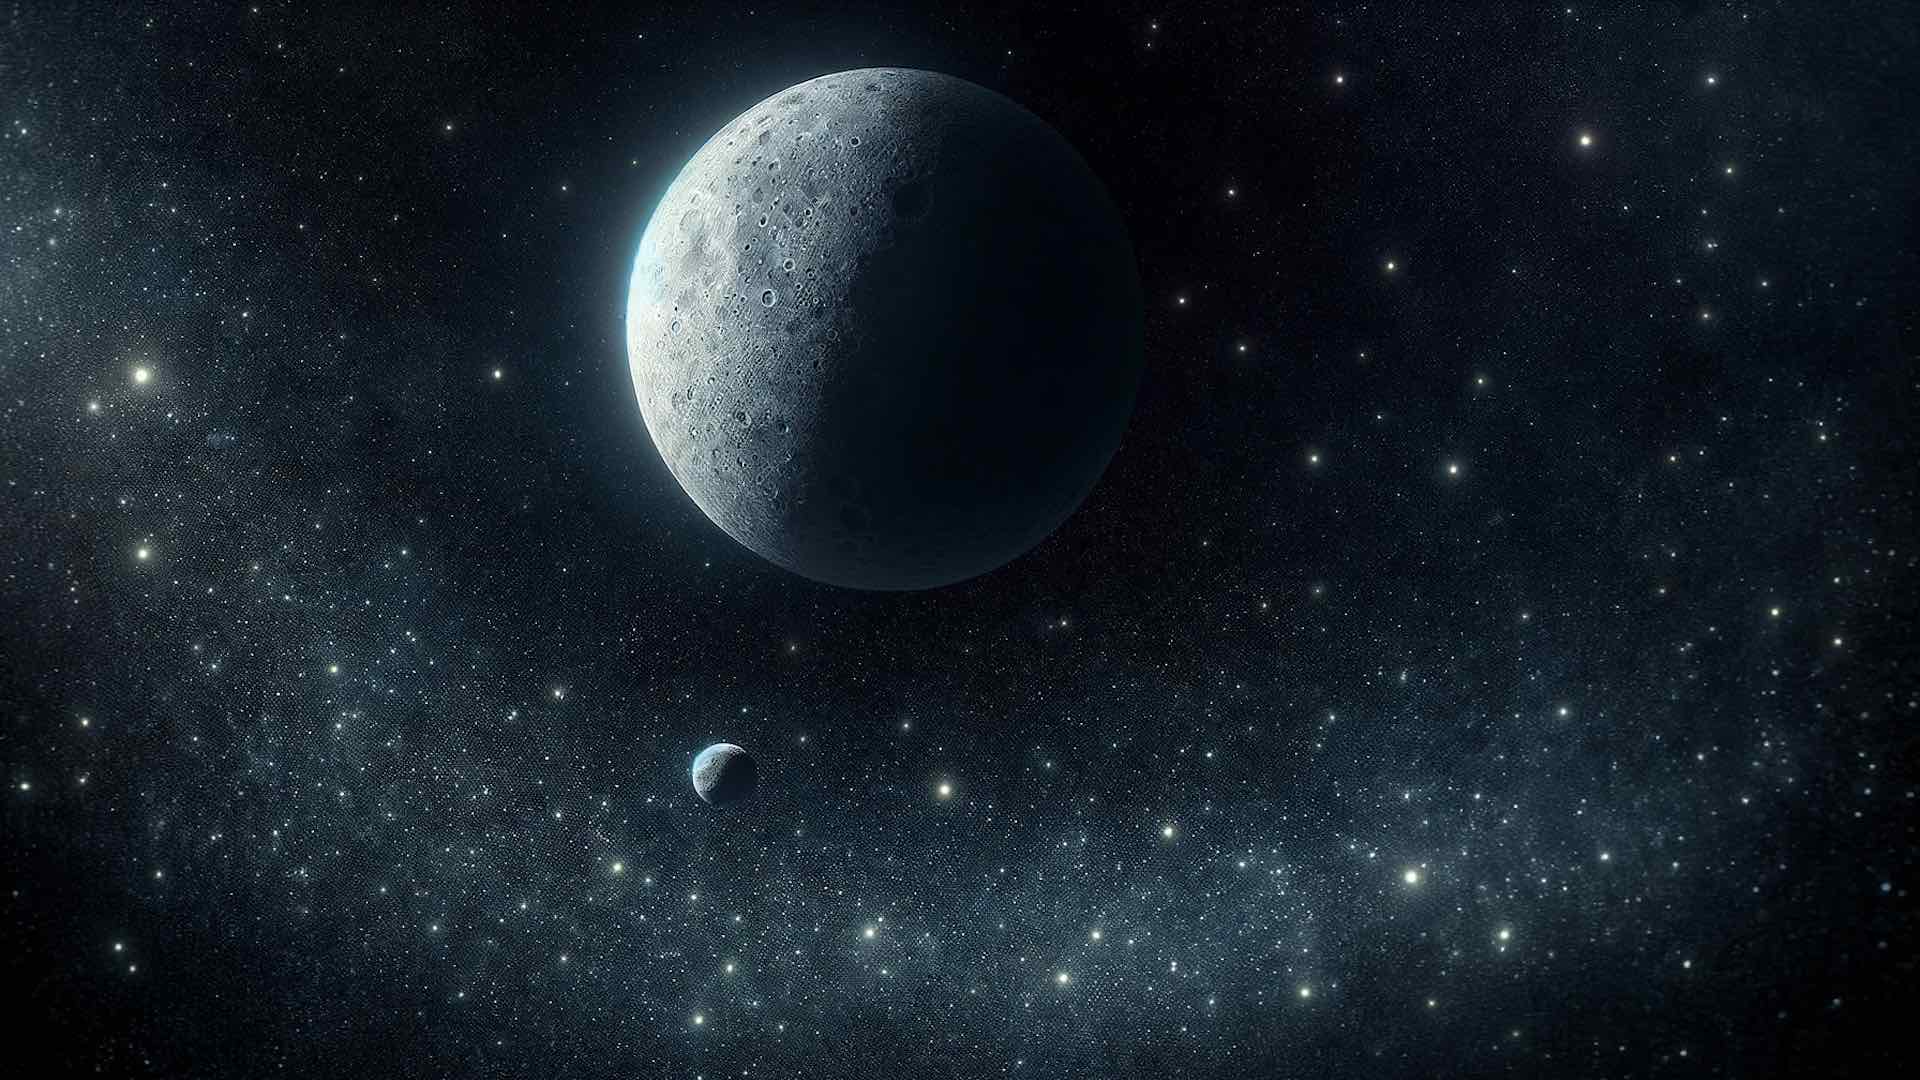 ناسا کے لوسی خلائی جہاز نے چھوٹے چاند کے گرد گھومنے والے کشودرگرہ دنکنیش کی نقاب کشائی کی۔